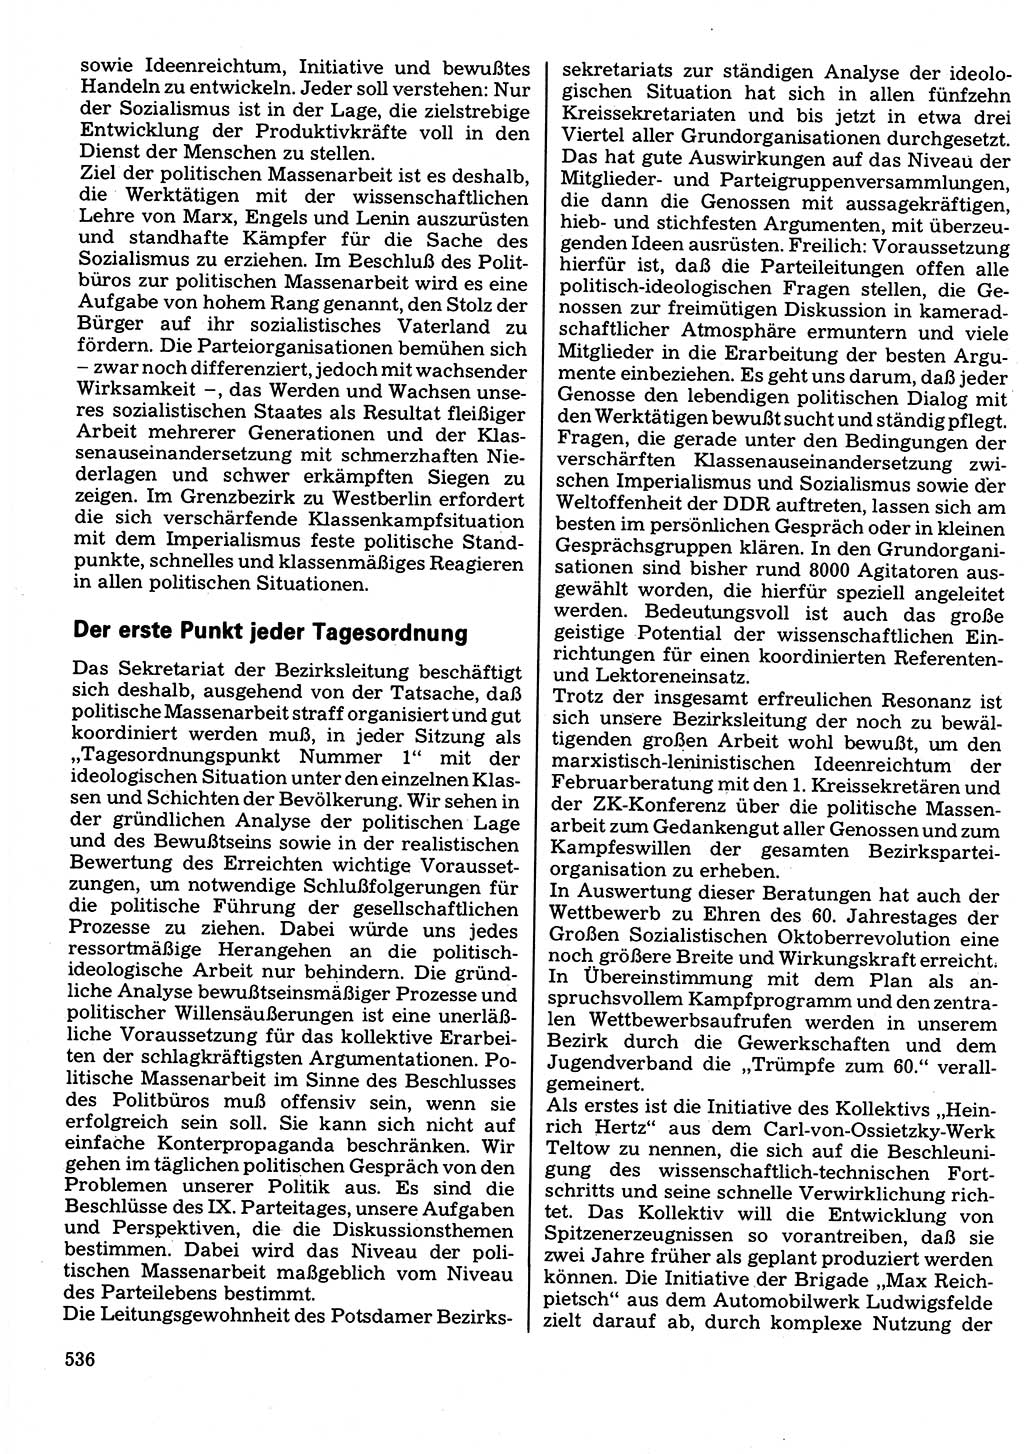 Neuer Weg (NW), Organ des Zentralkomitees (ZK) der SED (Sozialistische Einheitspartei Deutschlands) für Fragen des Parteilebens, 32. Jahrgang [Deutsche Demokratische Republik (DDR)] 1977, Seite 536 (NW ZK SED DDR 1977, S. 536)